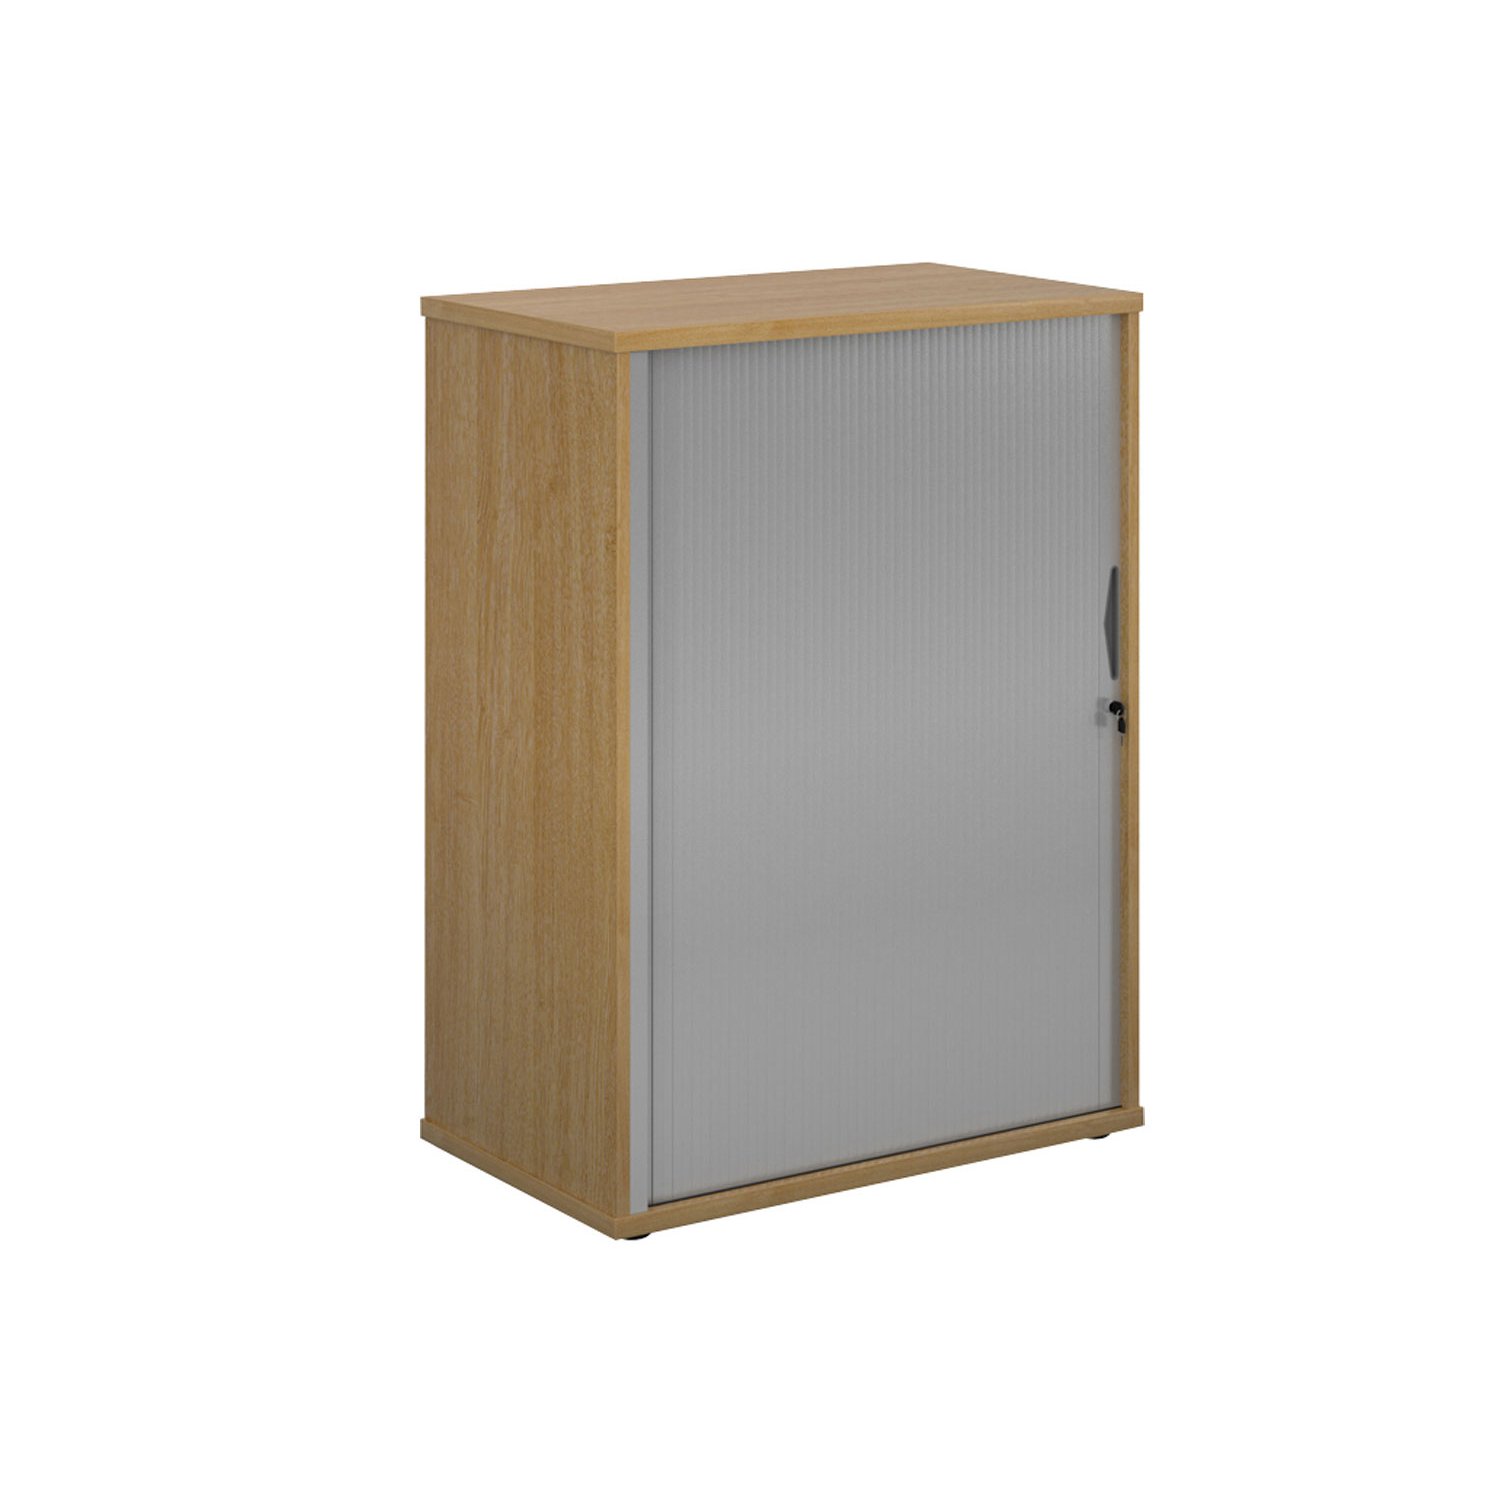 Single Door Wooden Tambour Cupboard, 2 Shelf - 80wx47dx109h (cm), Oak